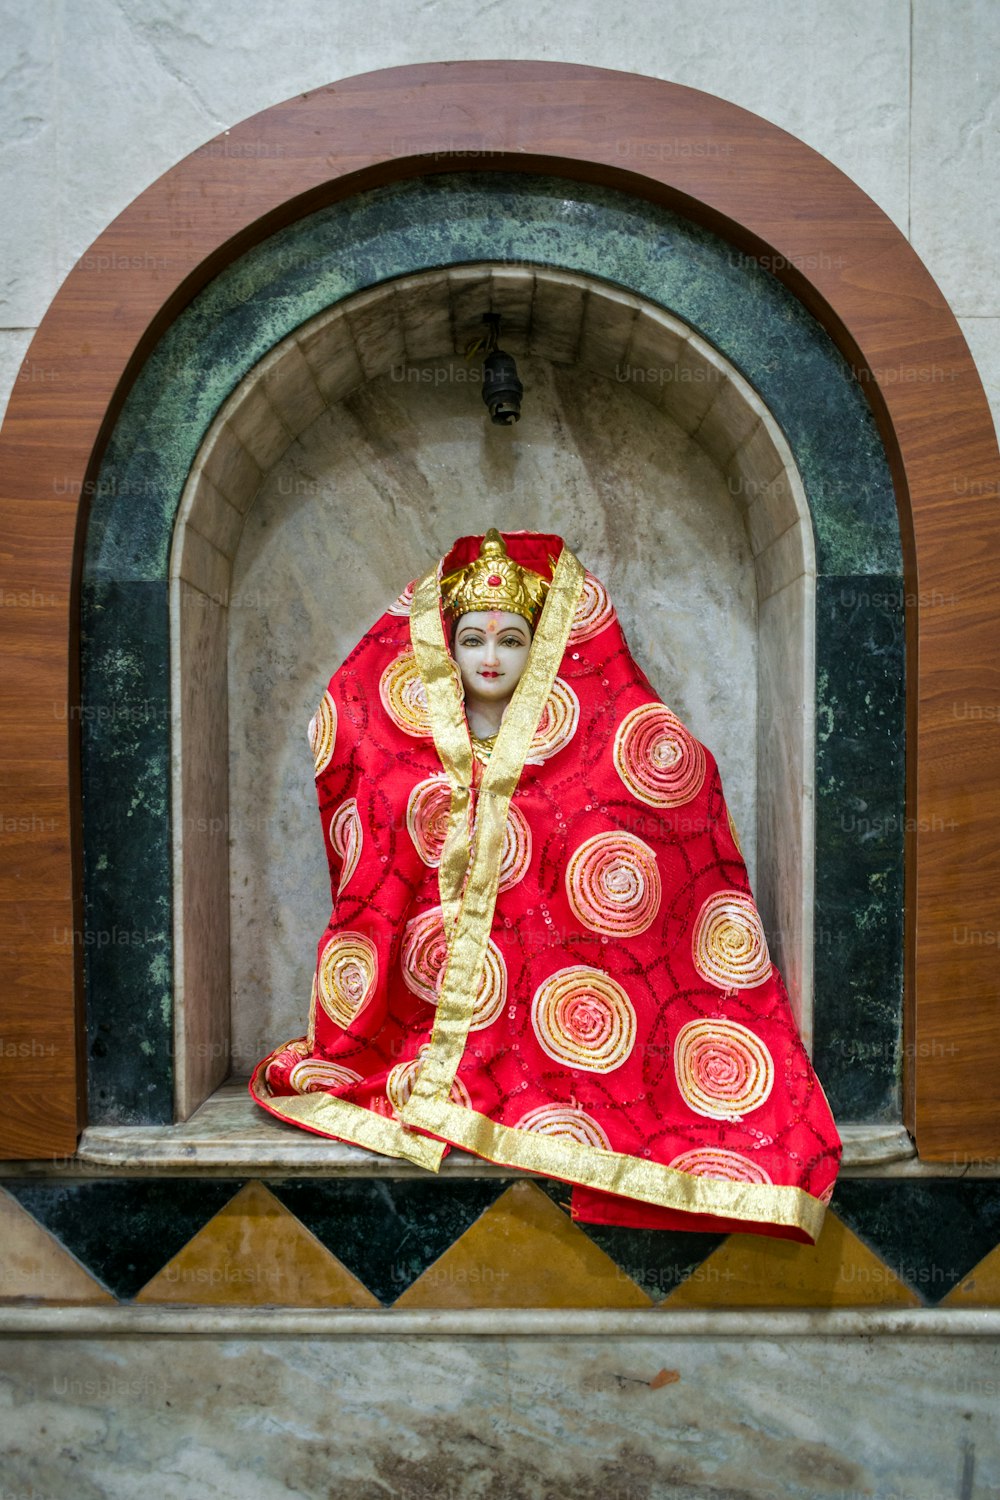 una statua di una donna vestita con un costume rosso e oro